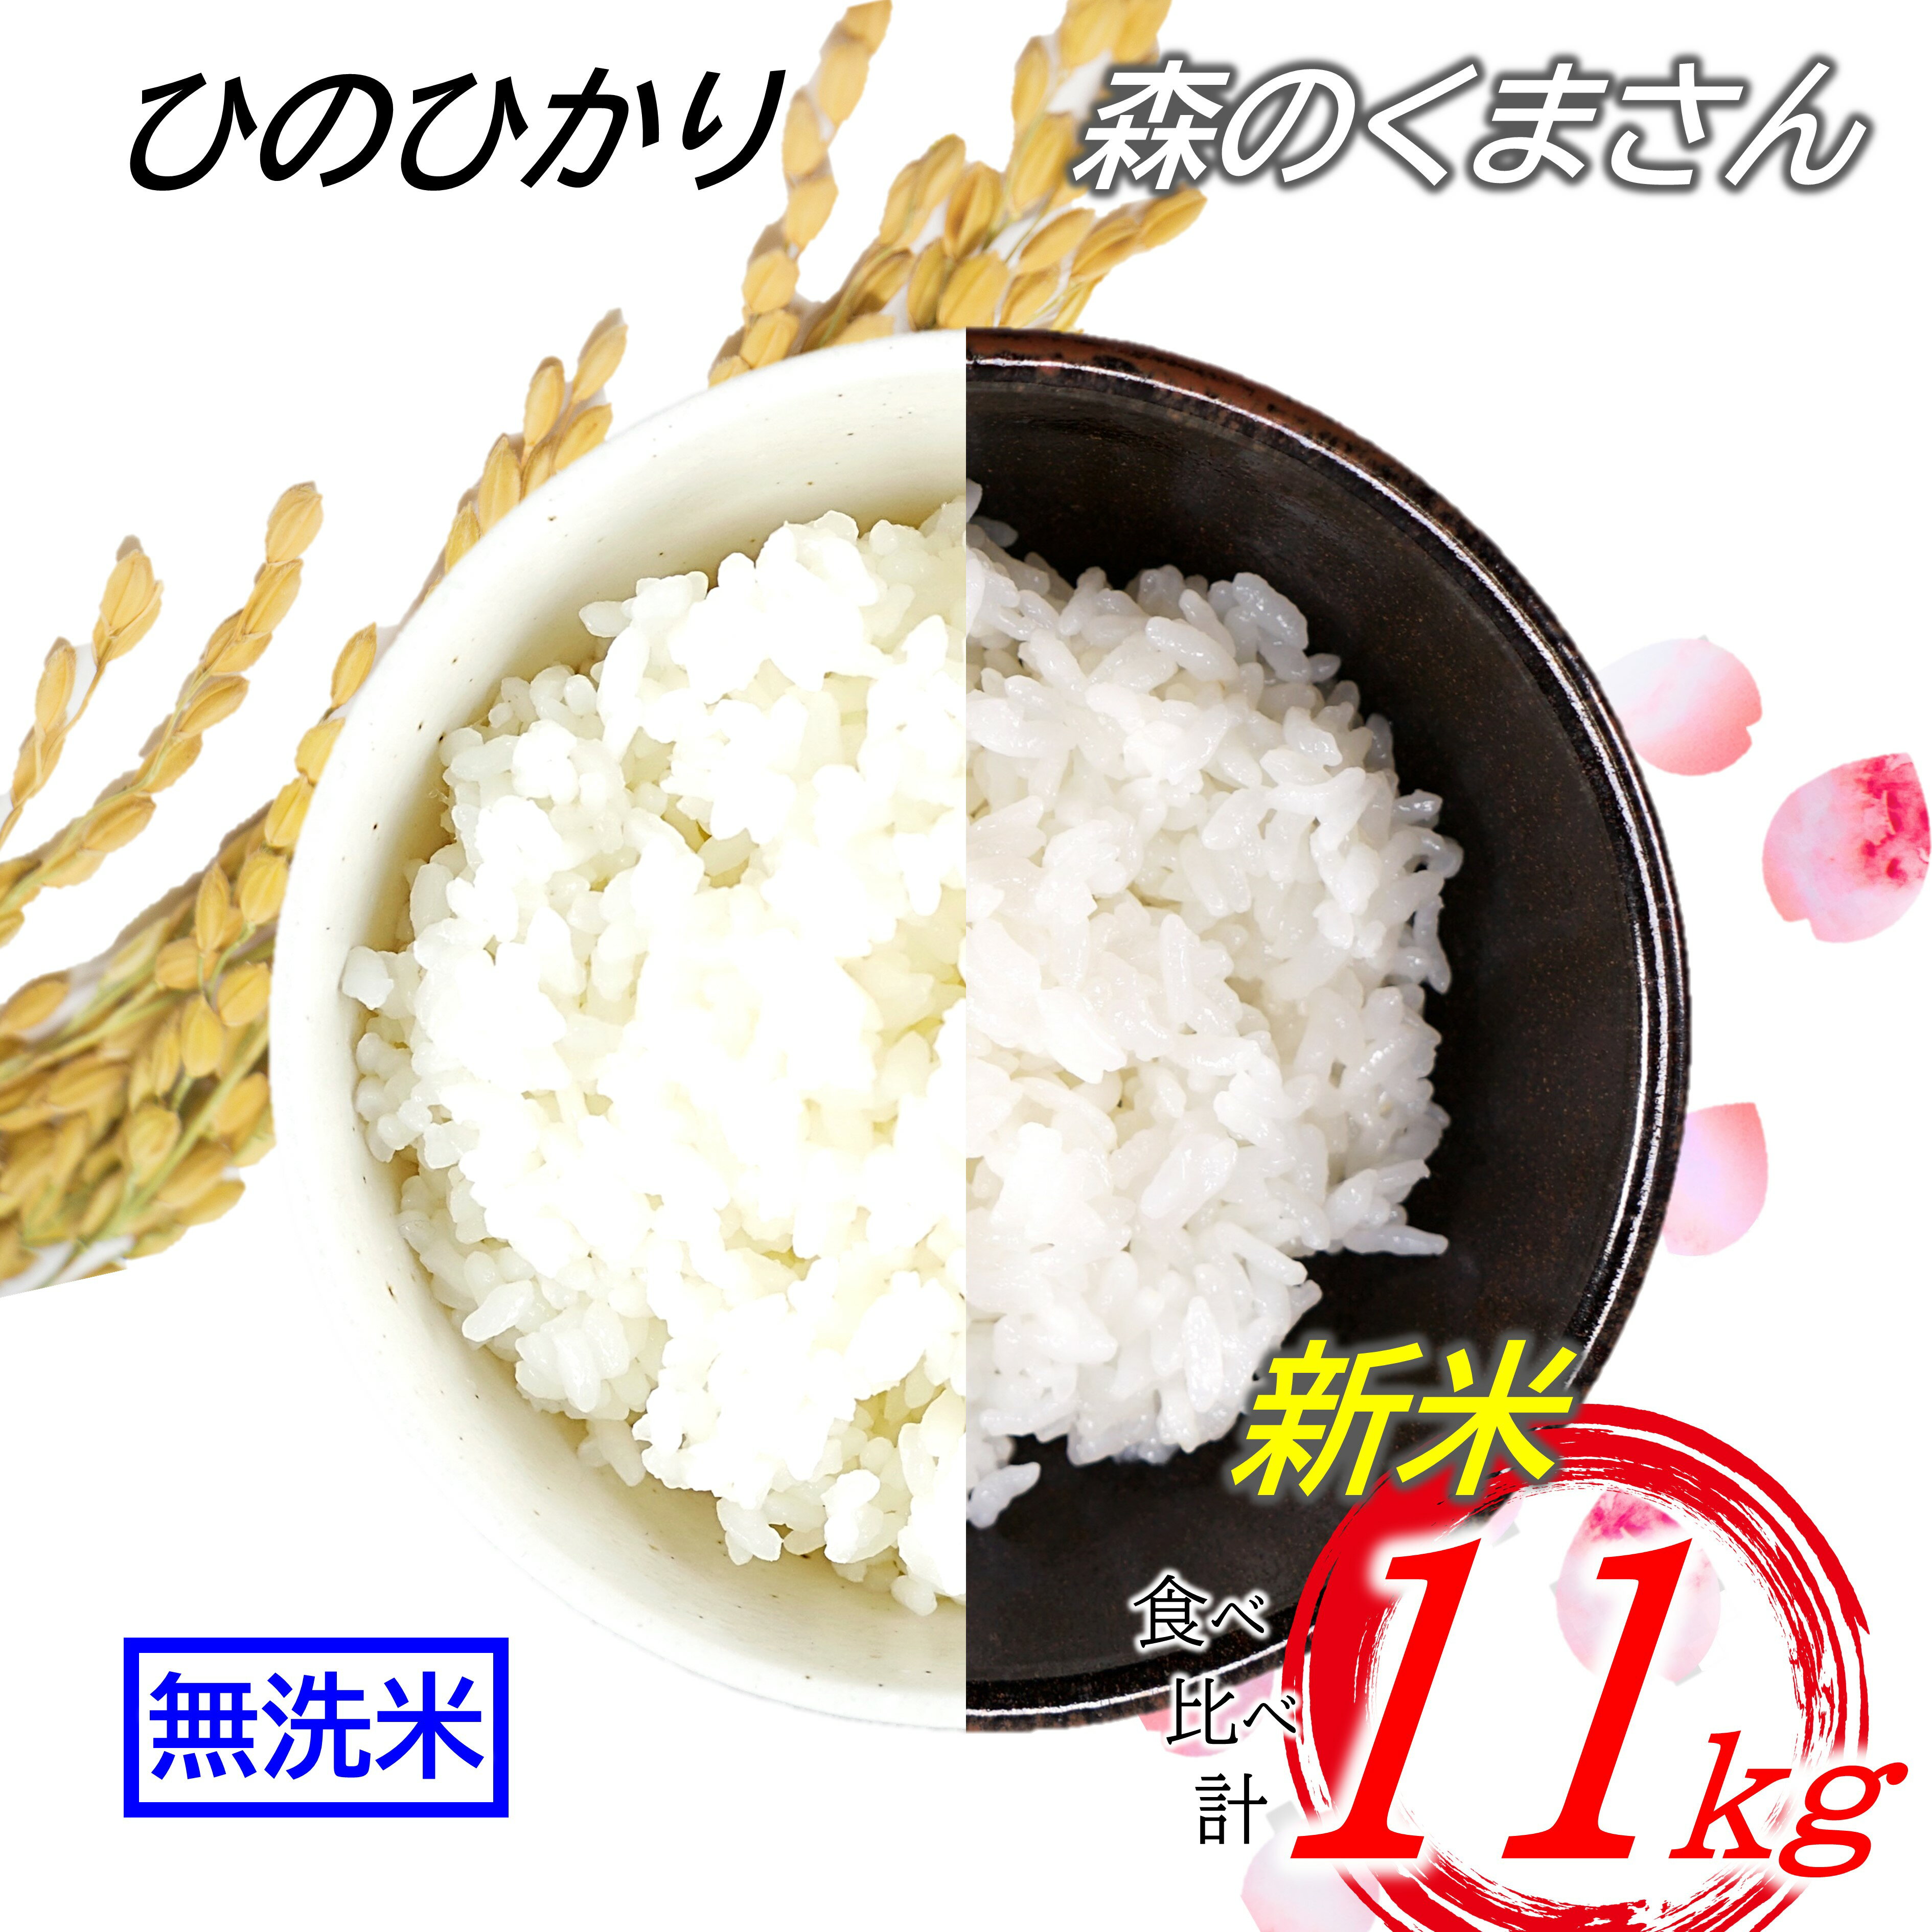 【ふるさと納税】 無洗米 2品 食べ比べ 菊池川流域の米 11kg